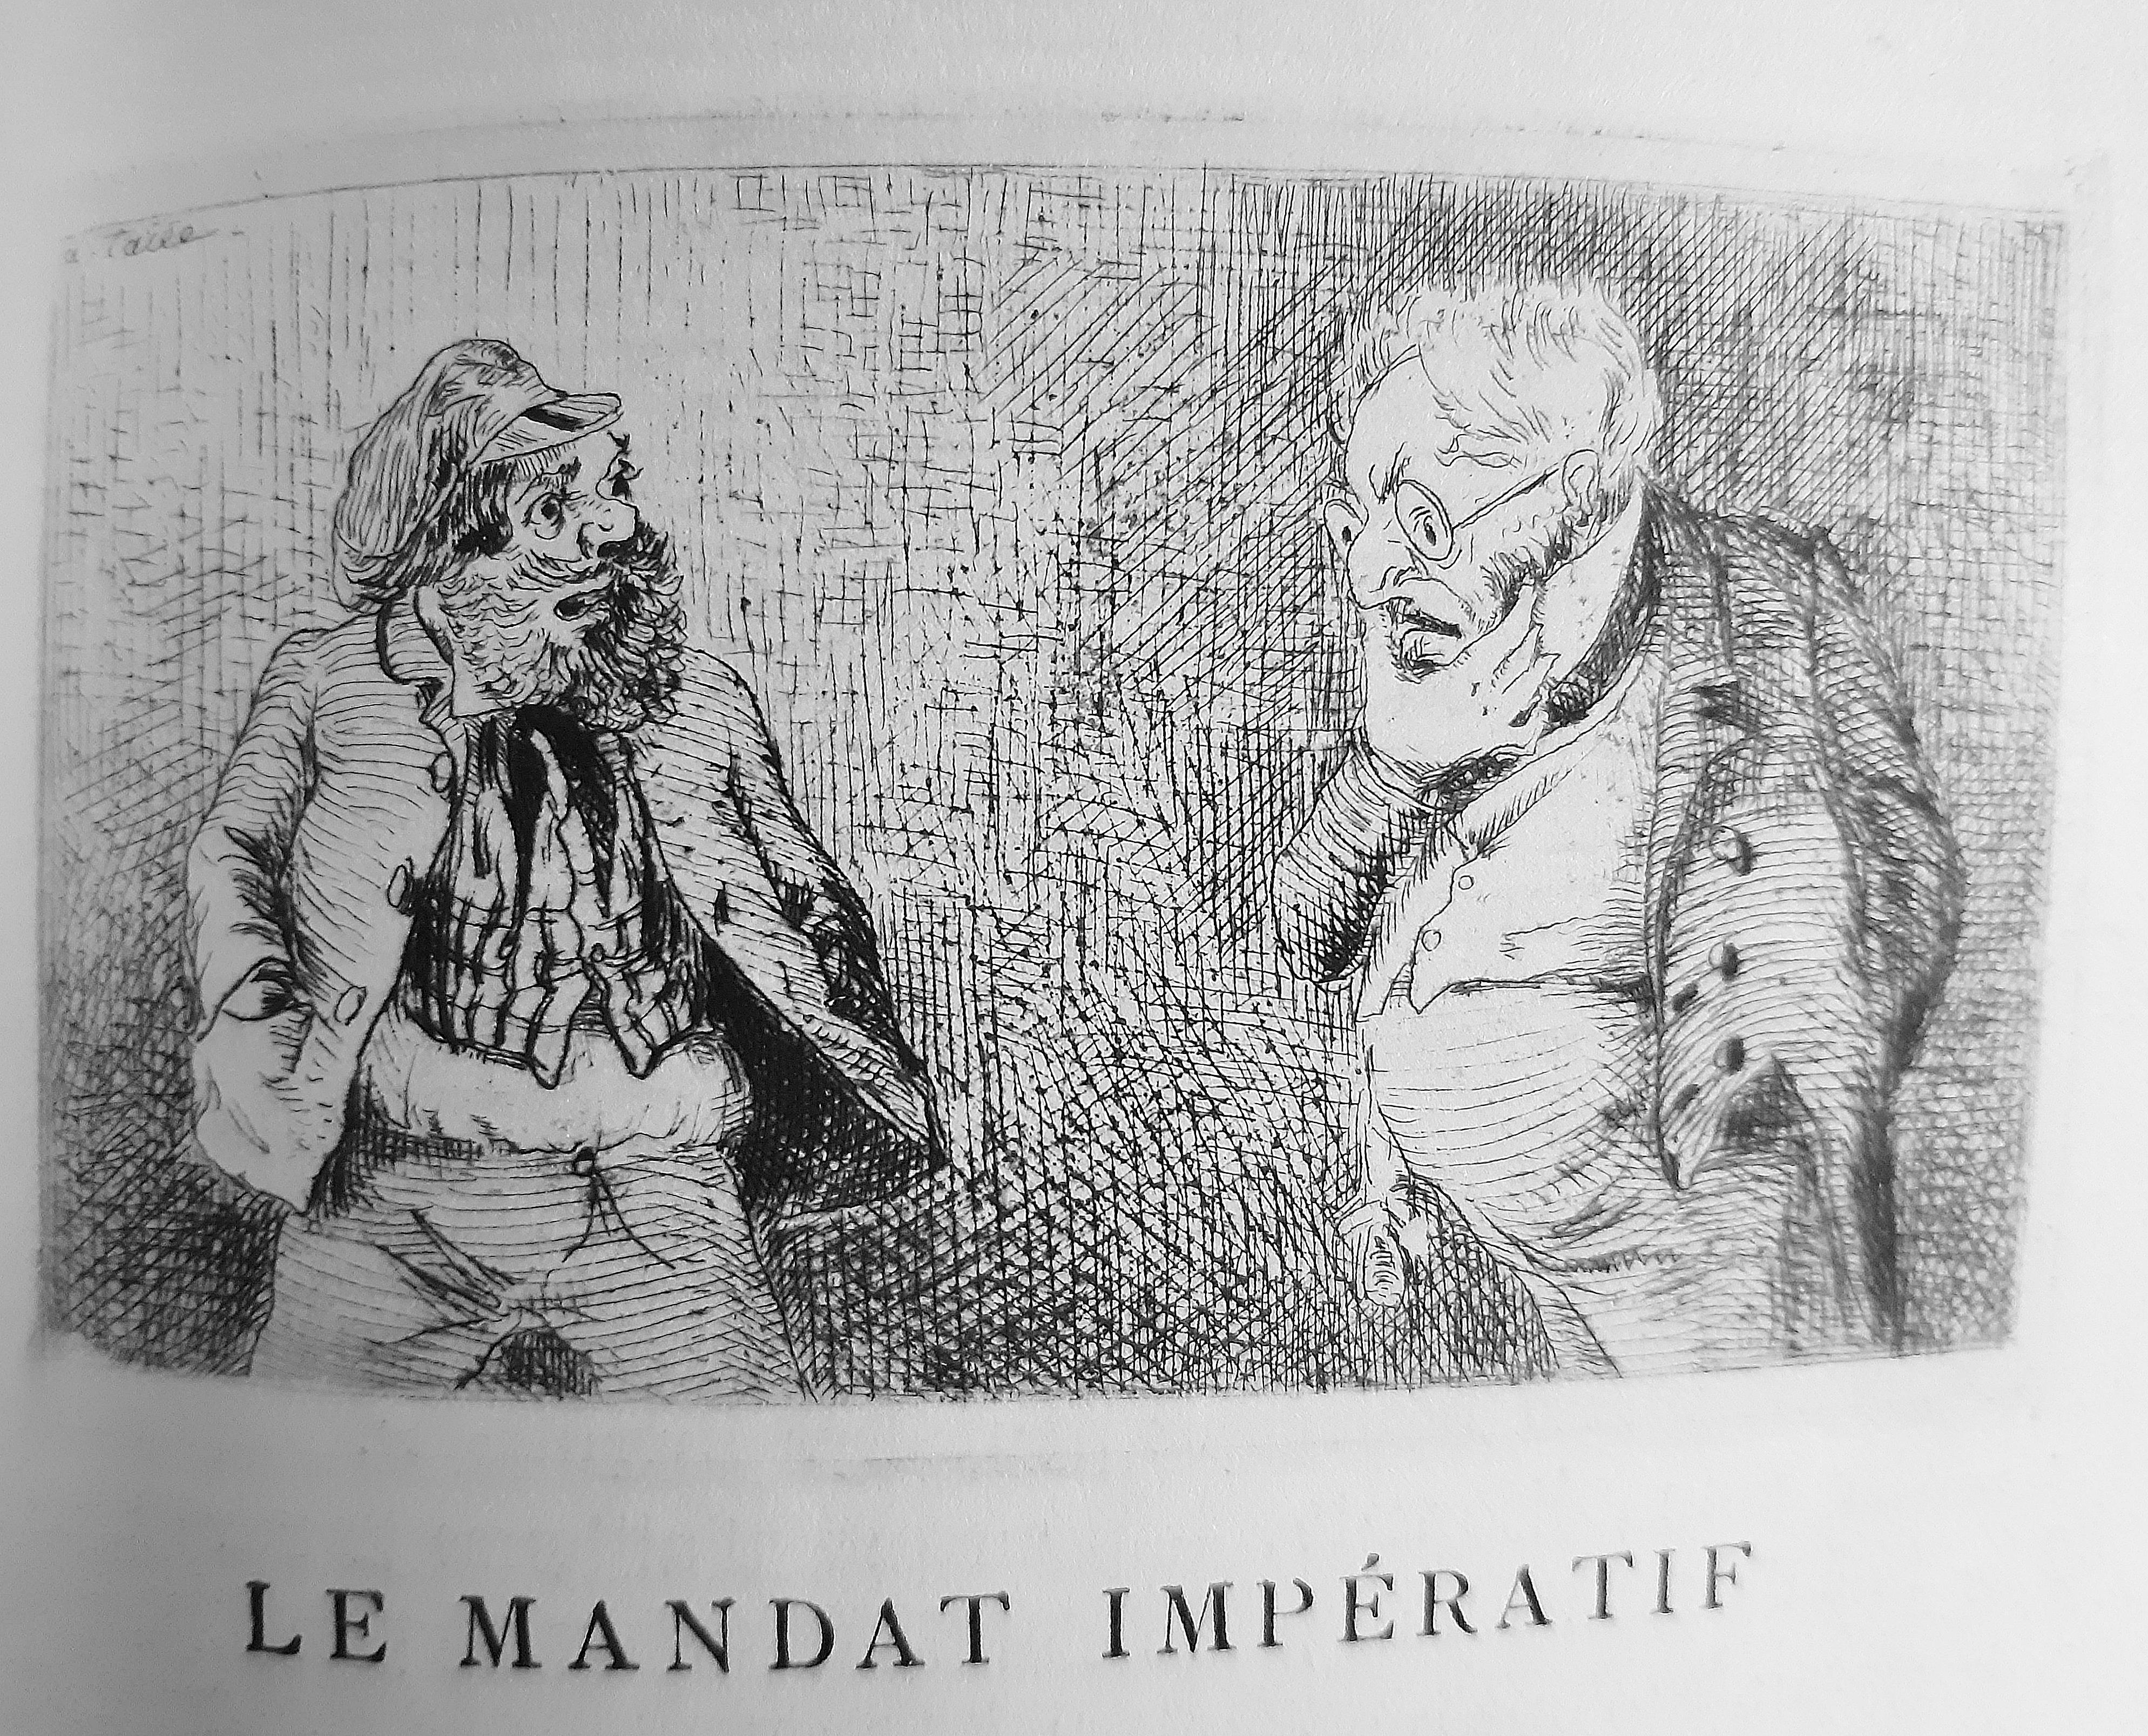 Théâtre des Pupazzi - Rare Book Illustrated by L. Lemercier de Neuville - 1876 - Art by Louis Lemercier de Neuville